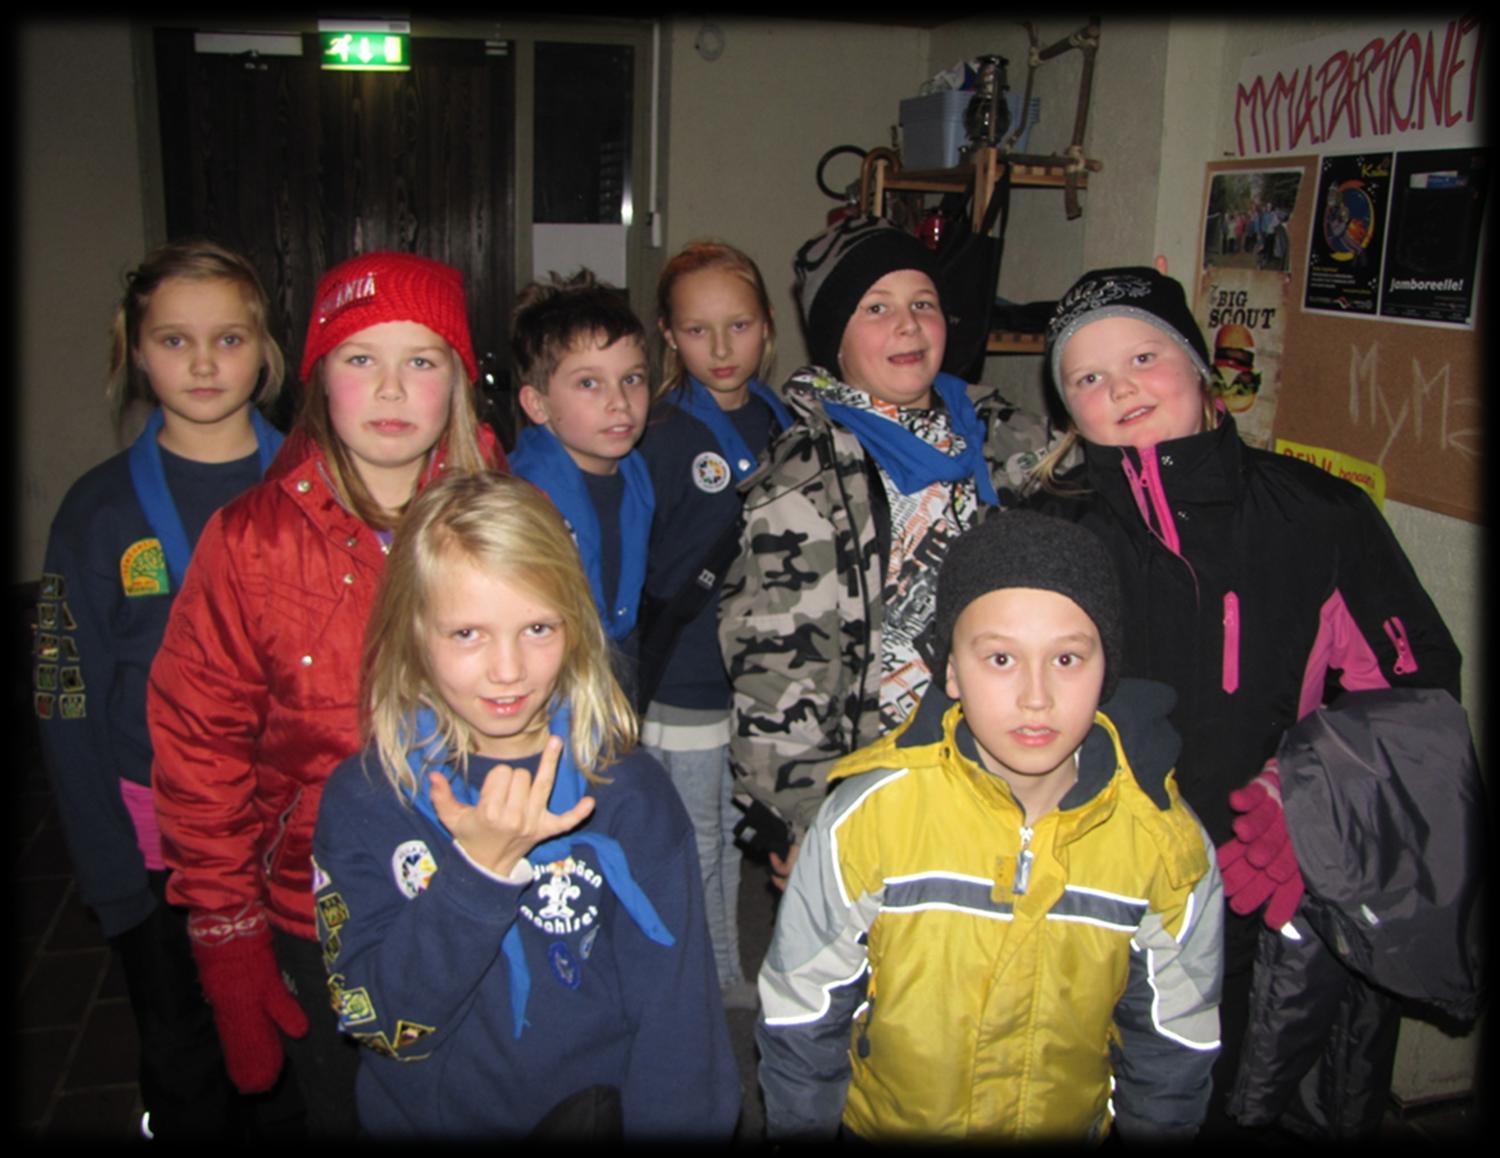 Maanantaisin kololla kokoontuu Kissapetojen seikkailijaryhmä. Ryhmään kuuluvat Venla, Helmi, Heidi, Sara, Matilda, Lauri, Tero ja Otso, sekä johtajina Meri ja Hanna.